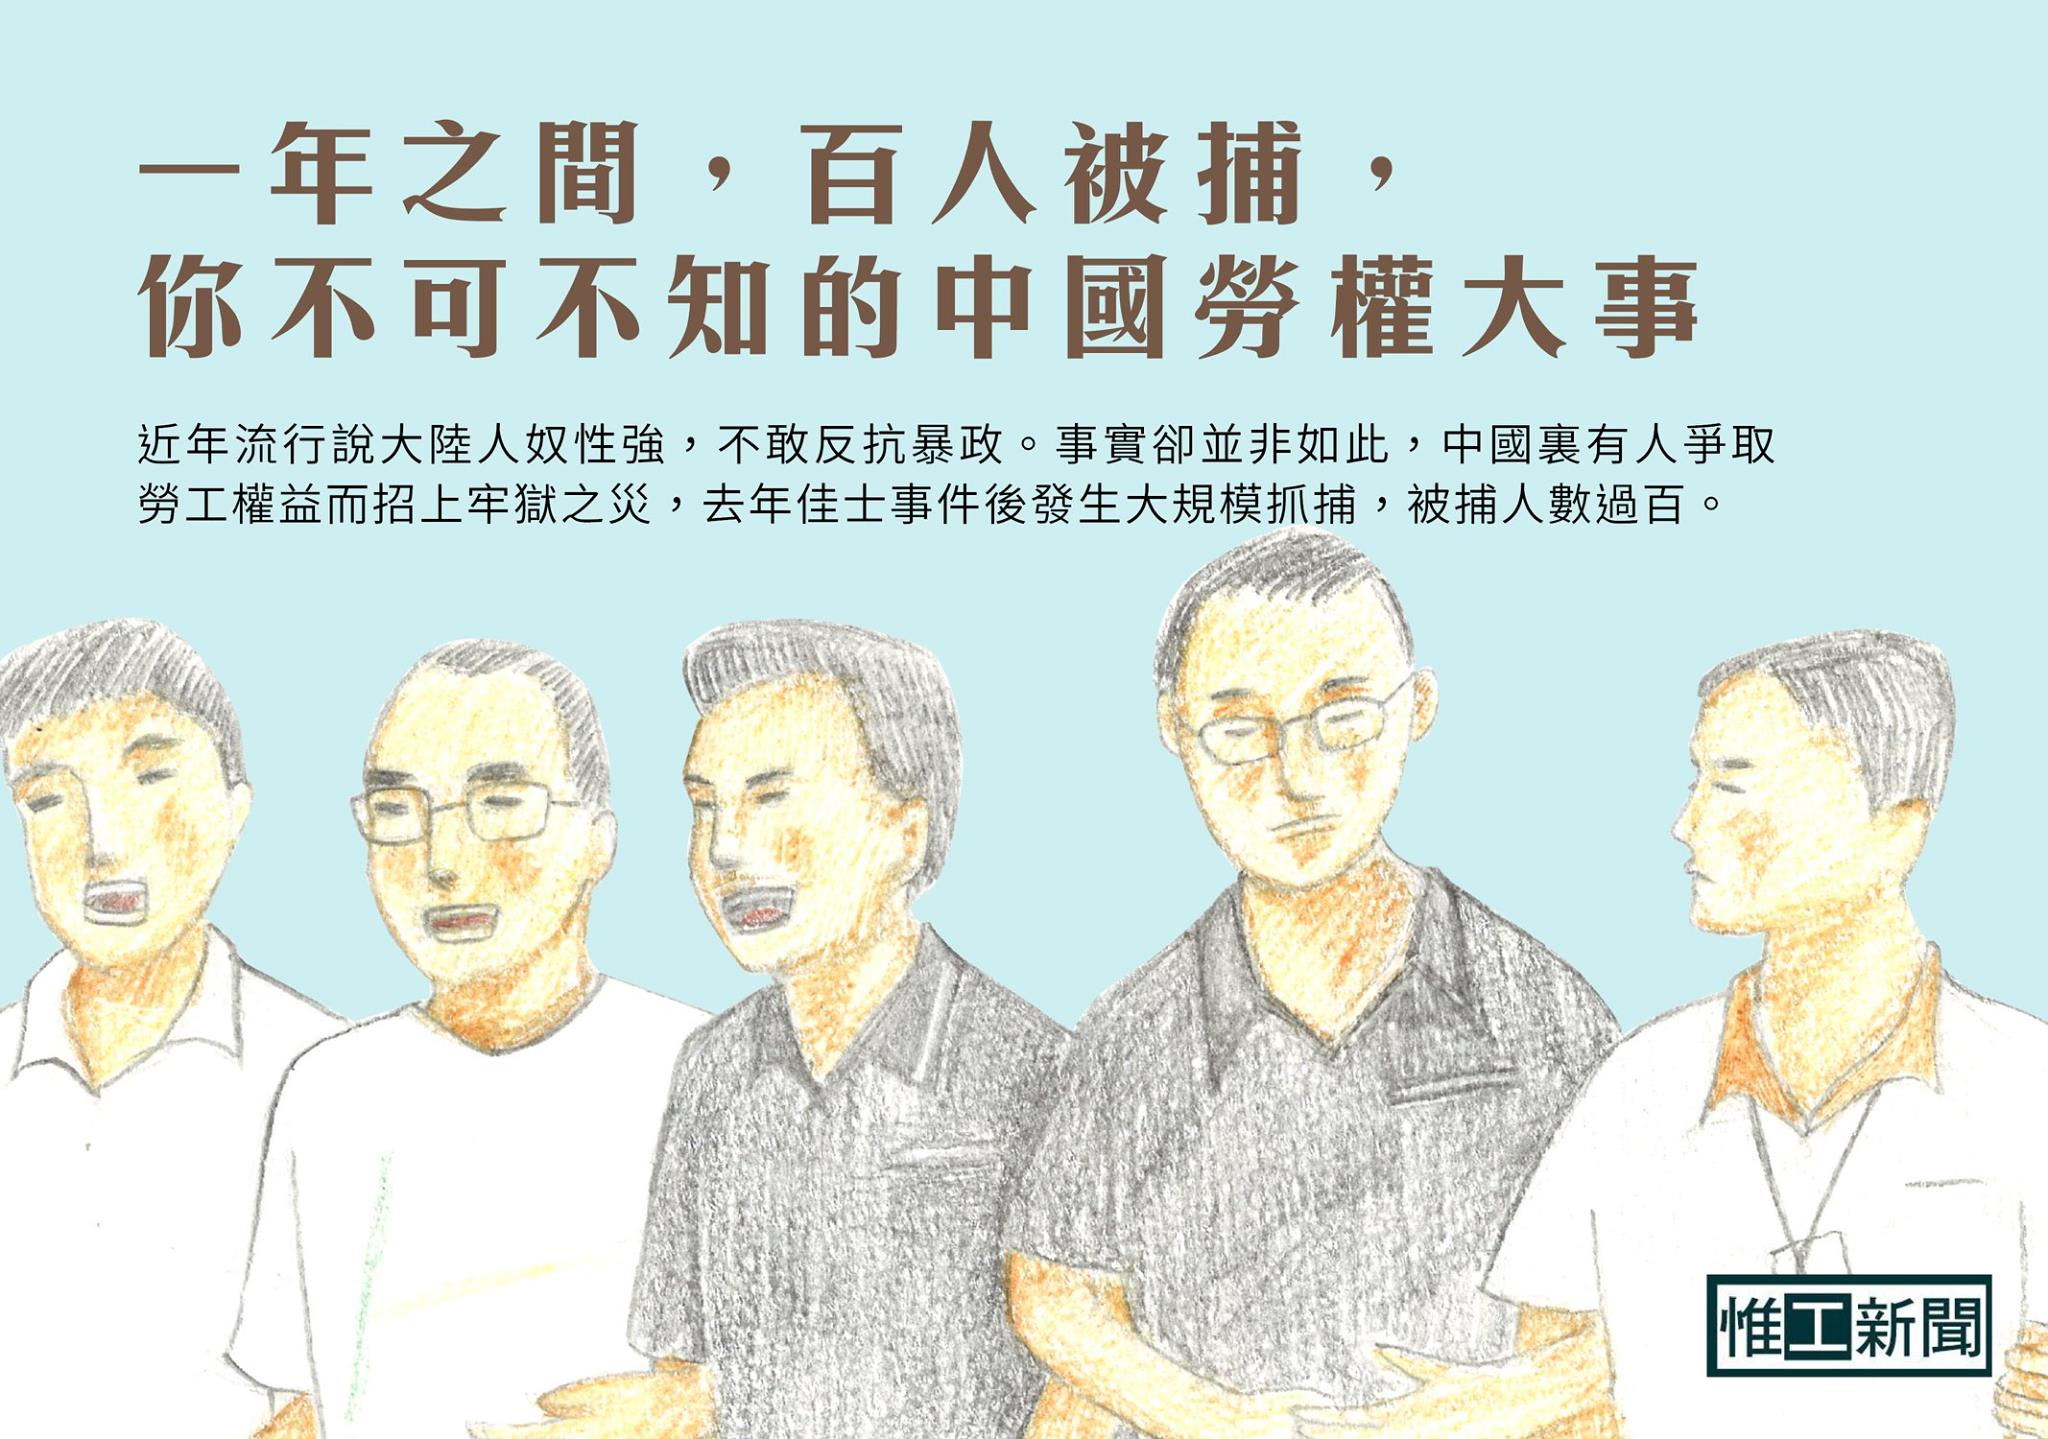 一年之間，百人被捕，不可不知的中國勞權大事